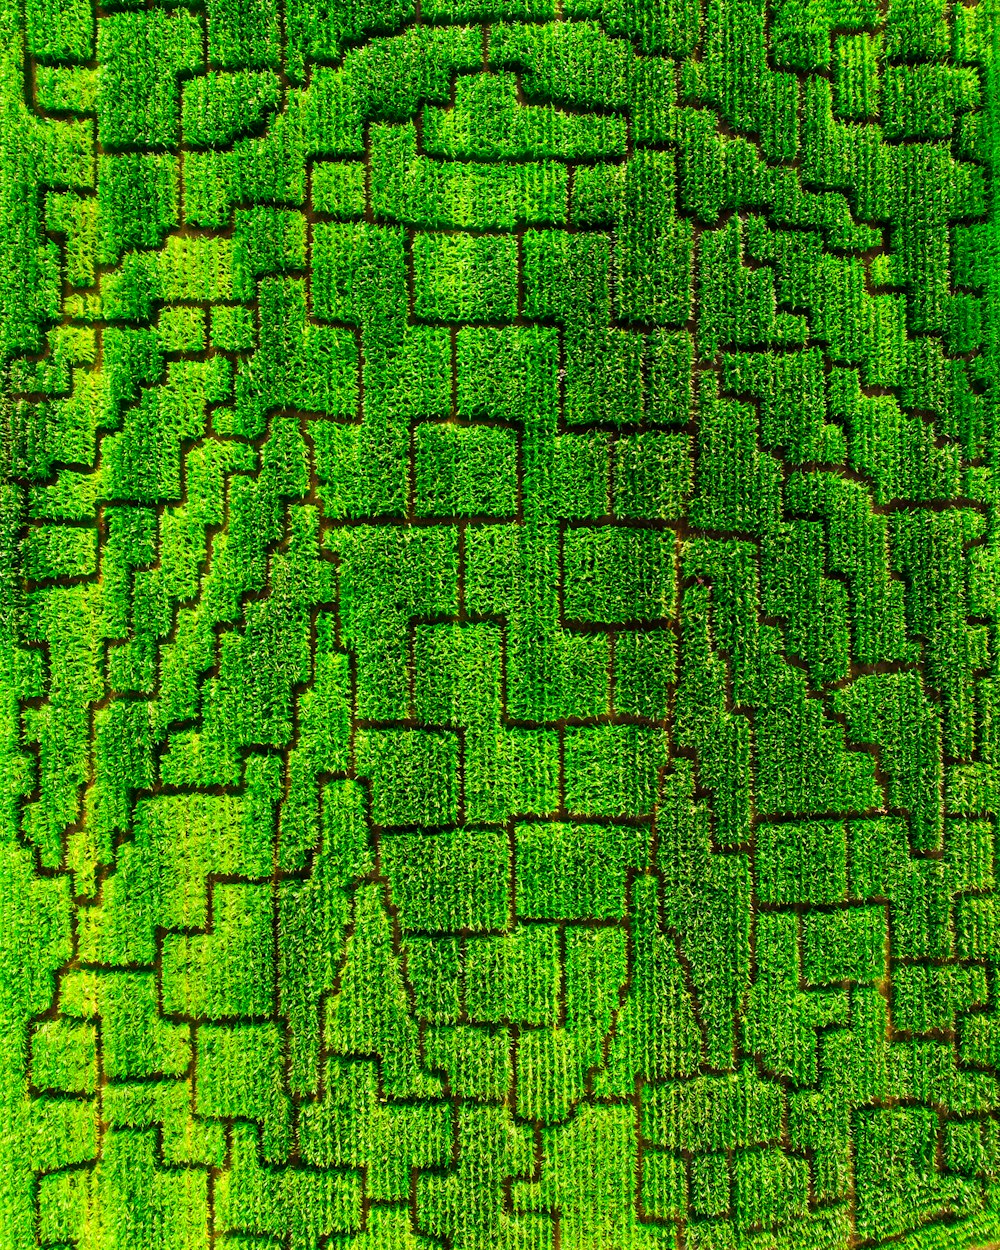 Luftaufnahme einer grünen Wiese